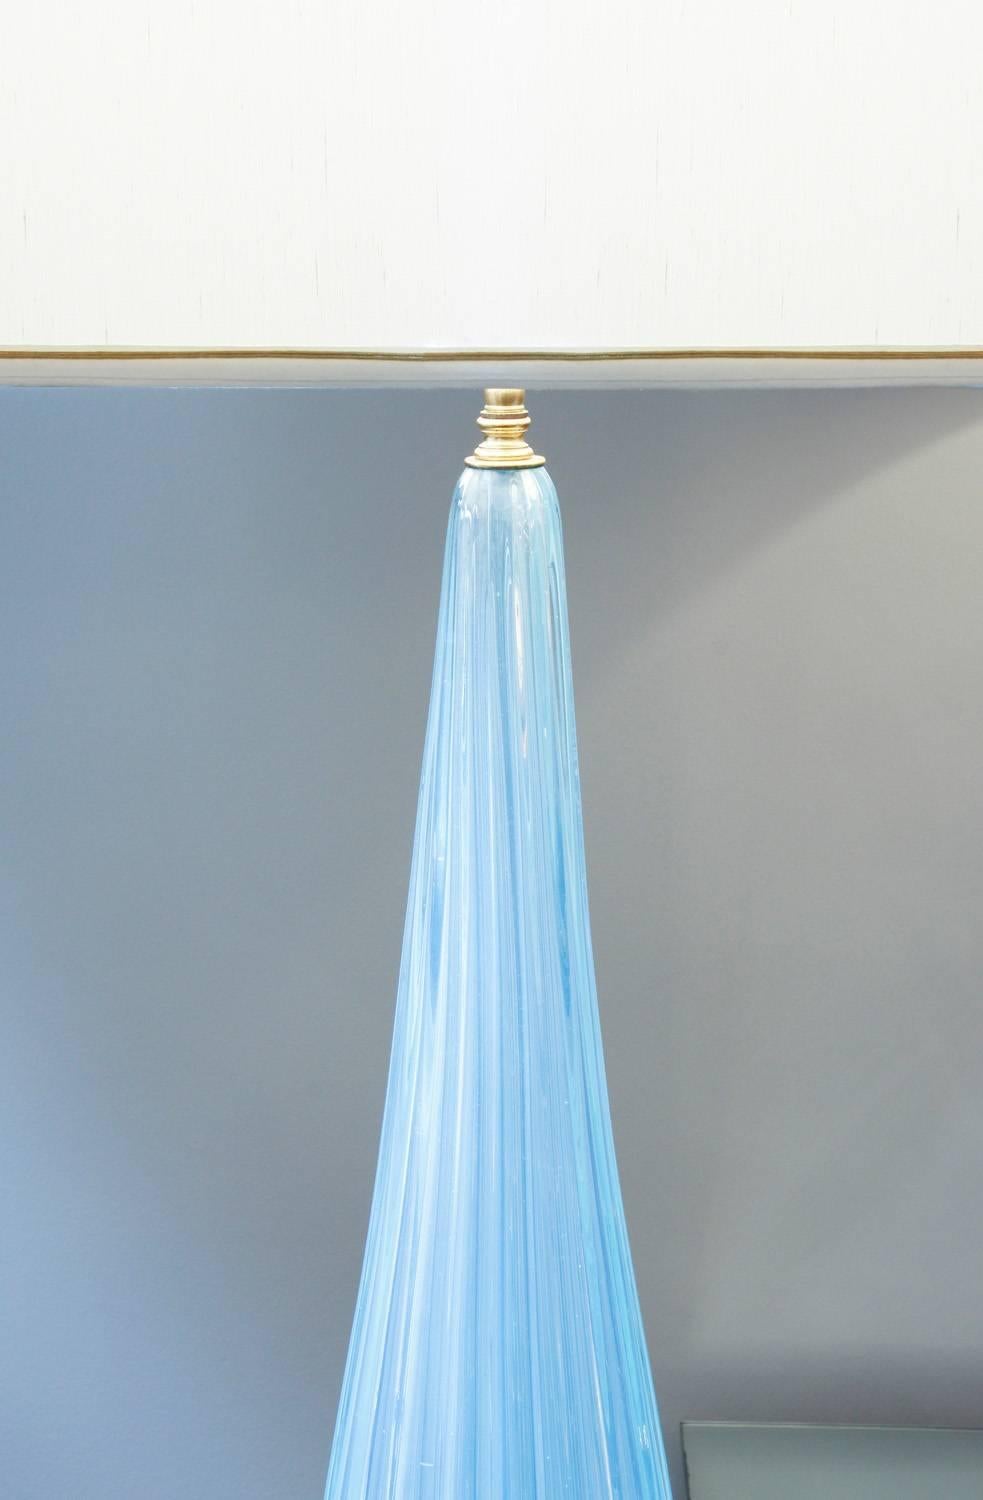 Monumentale Tischlampe aus mundgeblasenem blauem Glas mit Fuß und kanalisiertem Korpus von Barovier & Toso, Murano, Italien, 1950er Jahre.